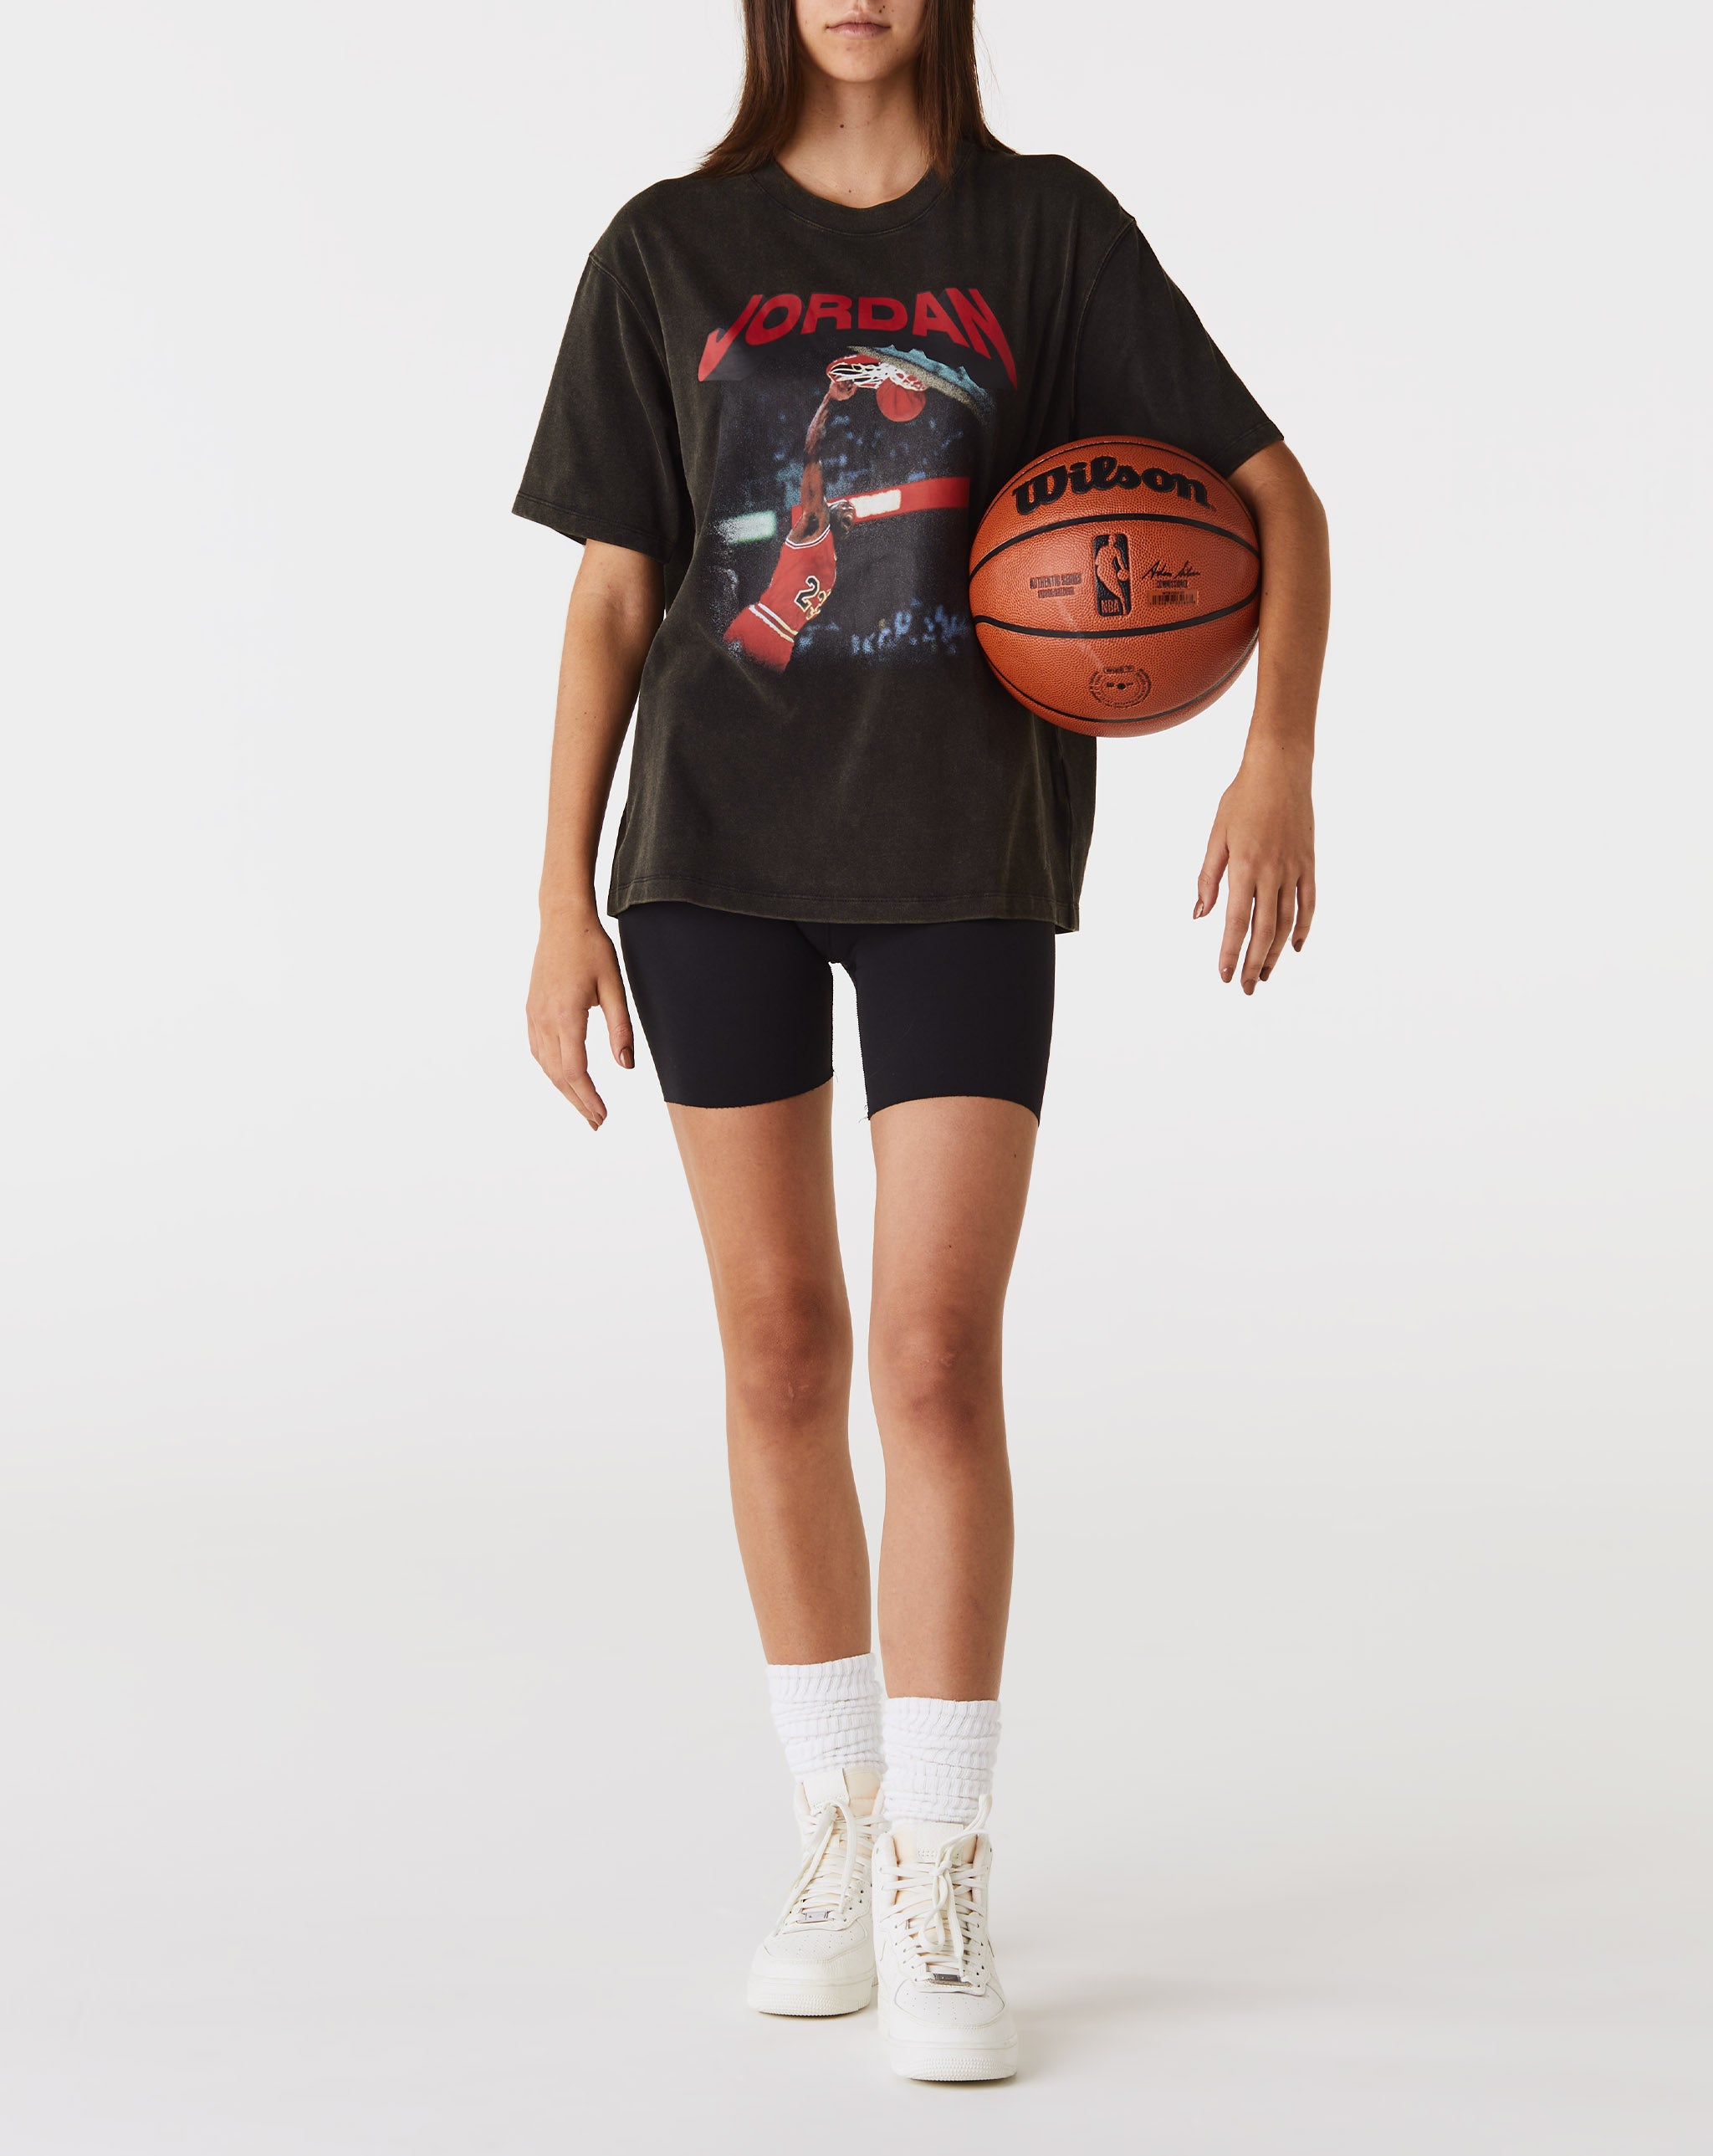 Air Jordan Women's (Her)itage T-shirt  - Cheap Urlfreeze Jordan outlet